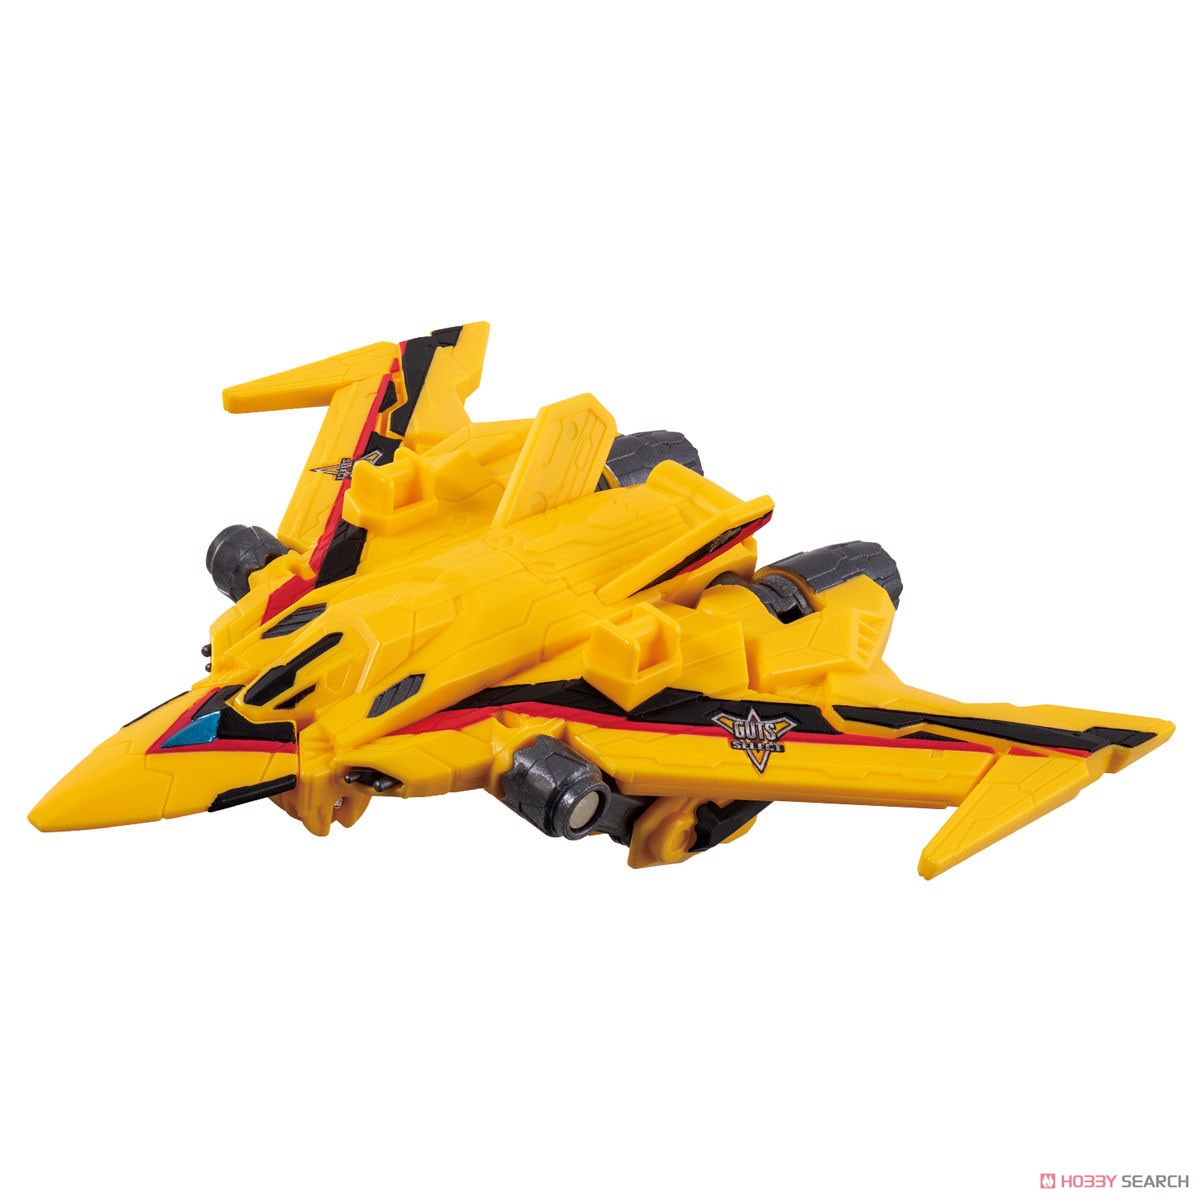 万代 DX 特利迦奥特曼 胜利队 胜利猎鹰号 可动变形 机体模型玩具